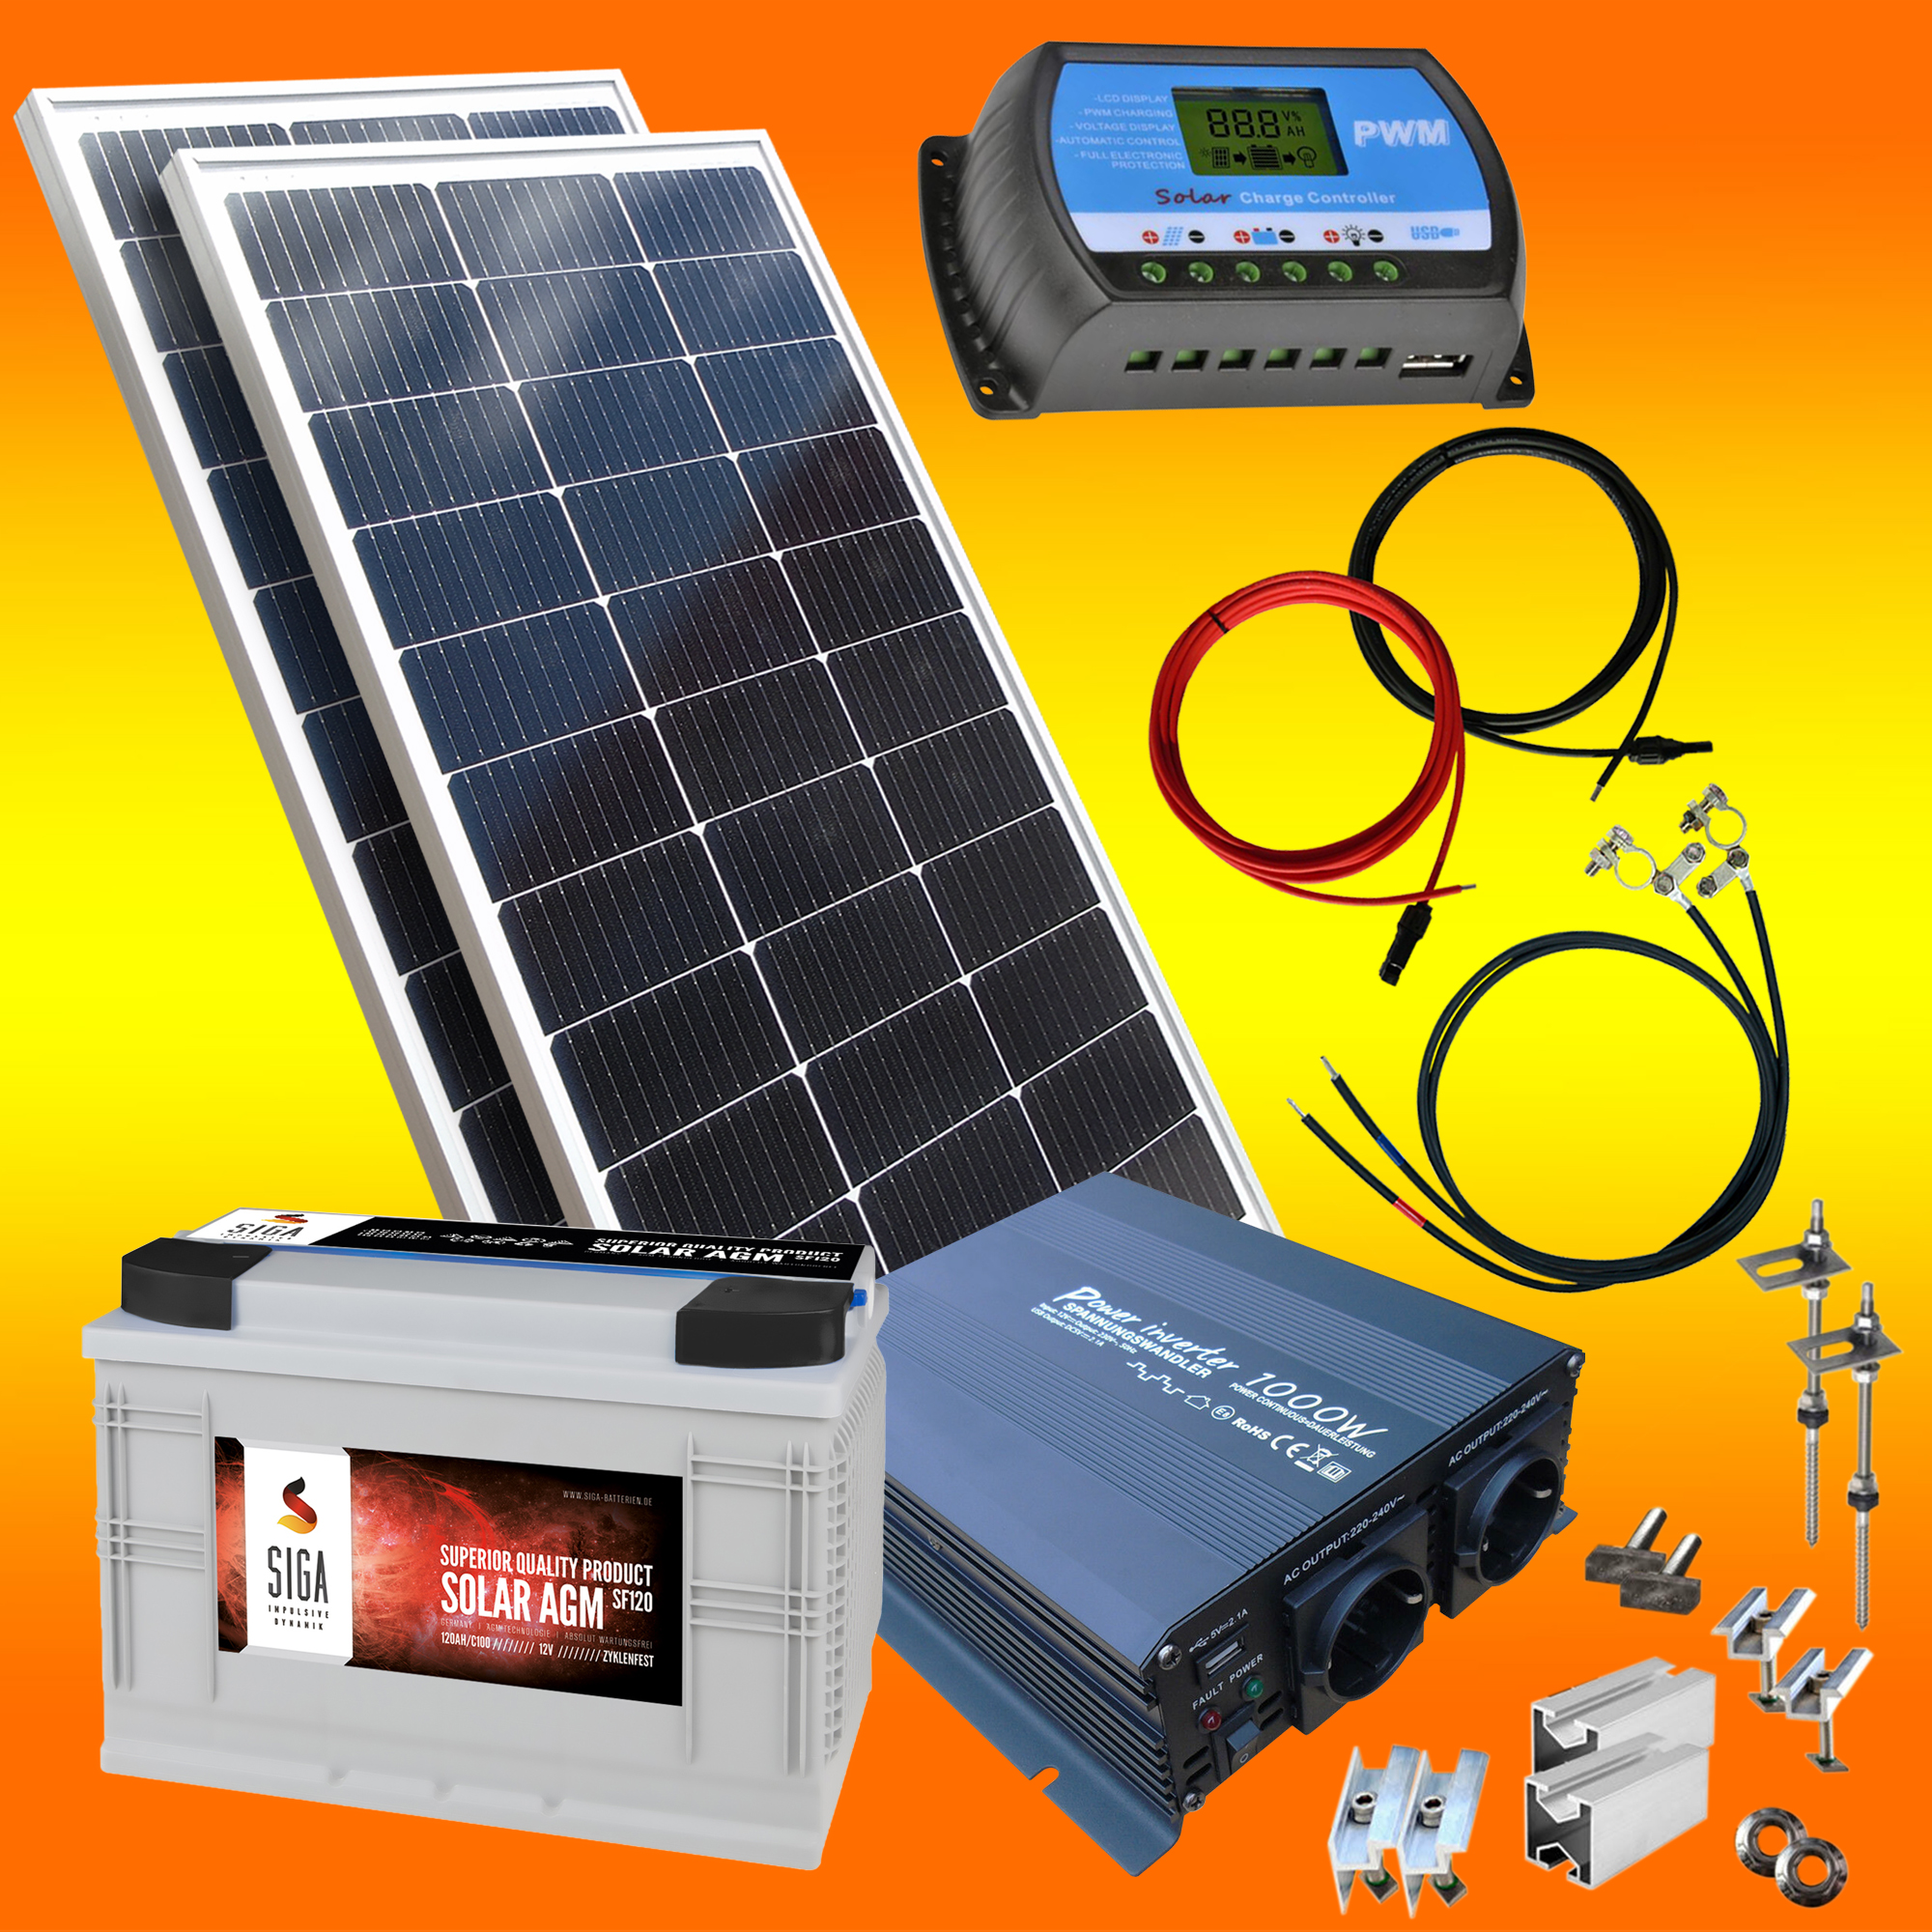 SIGA Solarbatterie S100 12V, 140,99 €